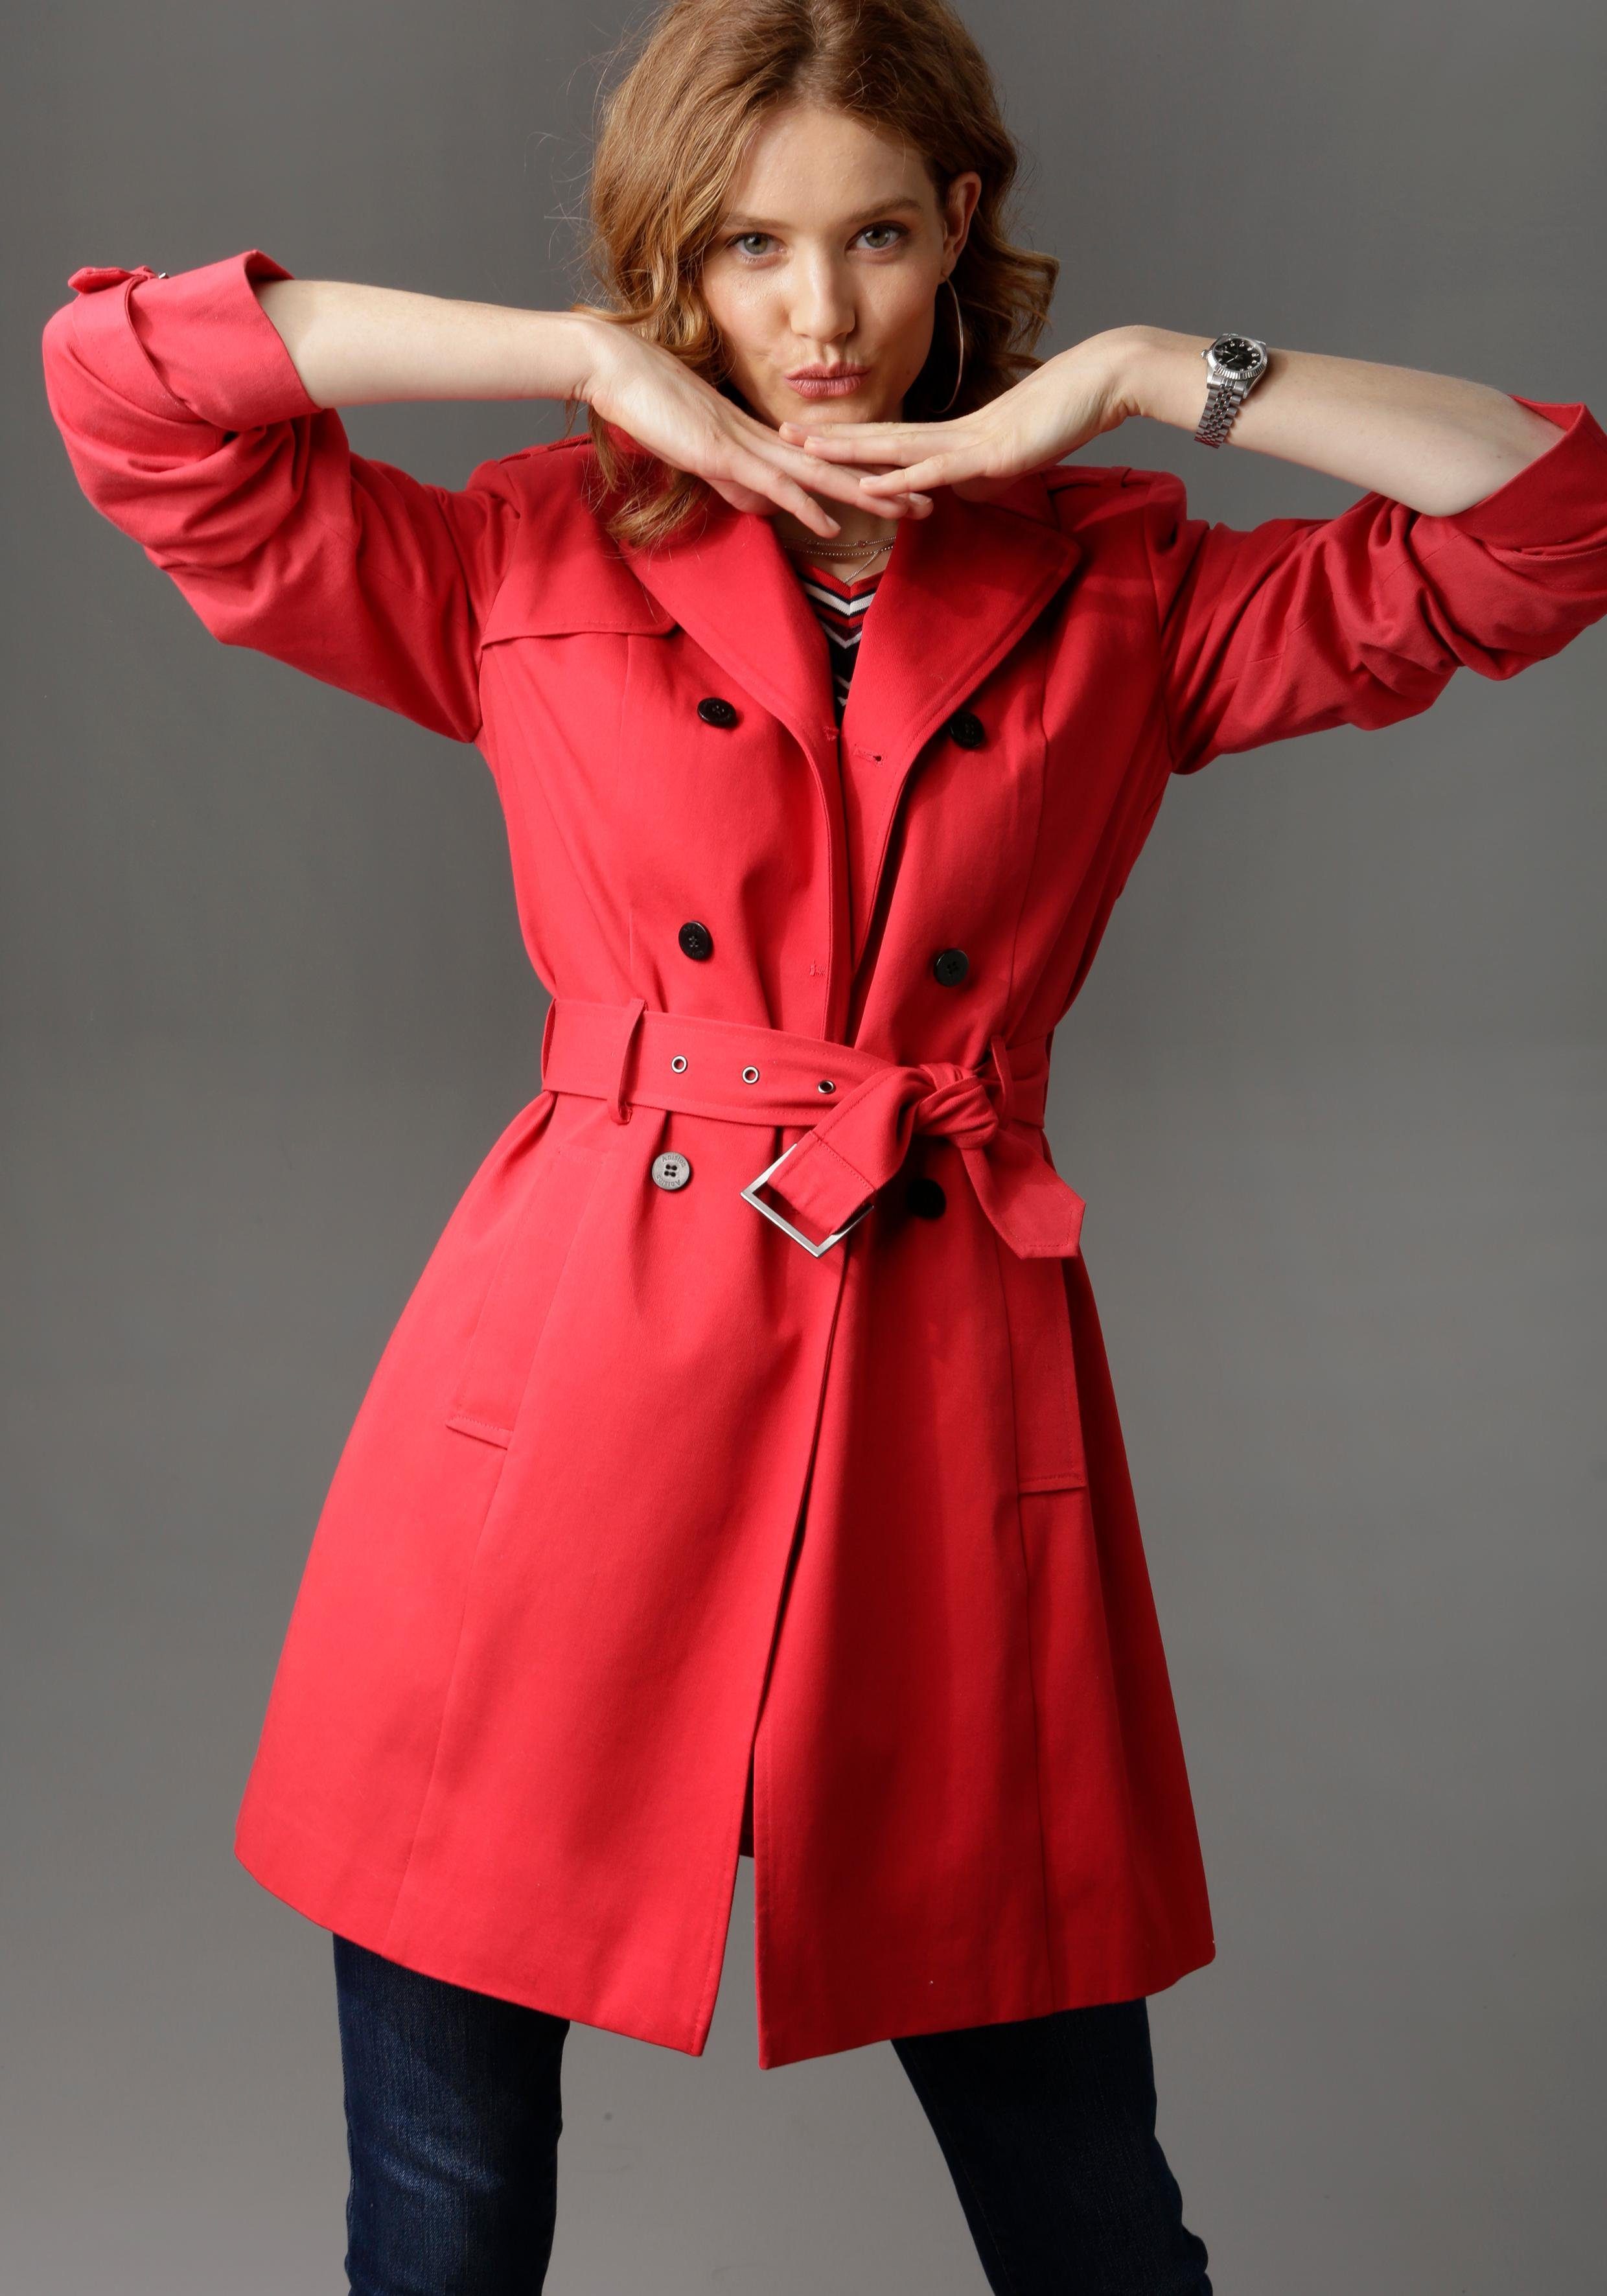 Roter Mantel online kaufen | OTTO